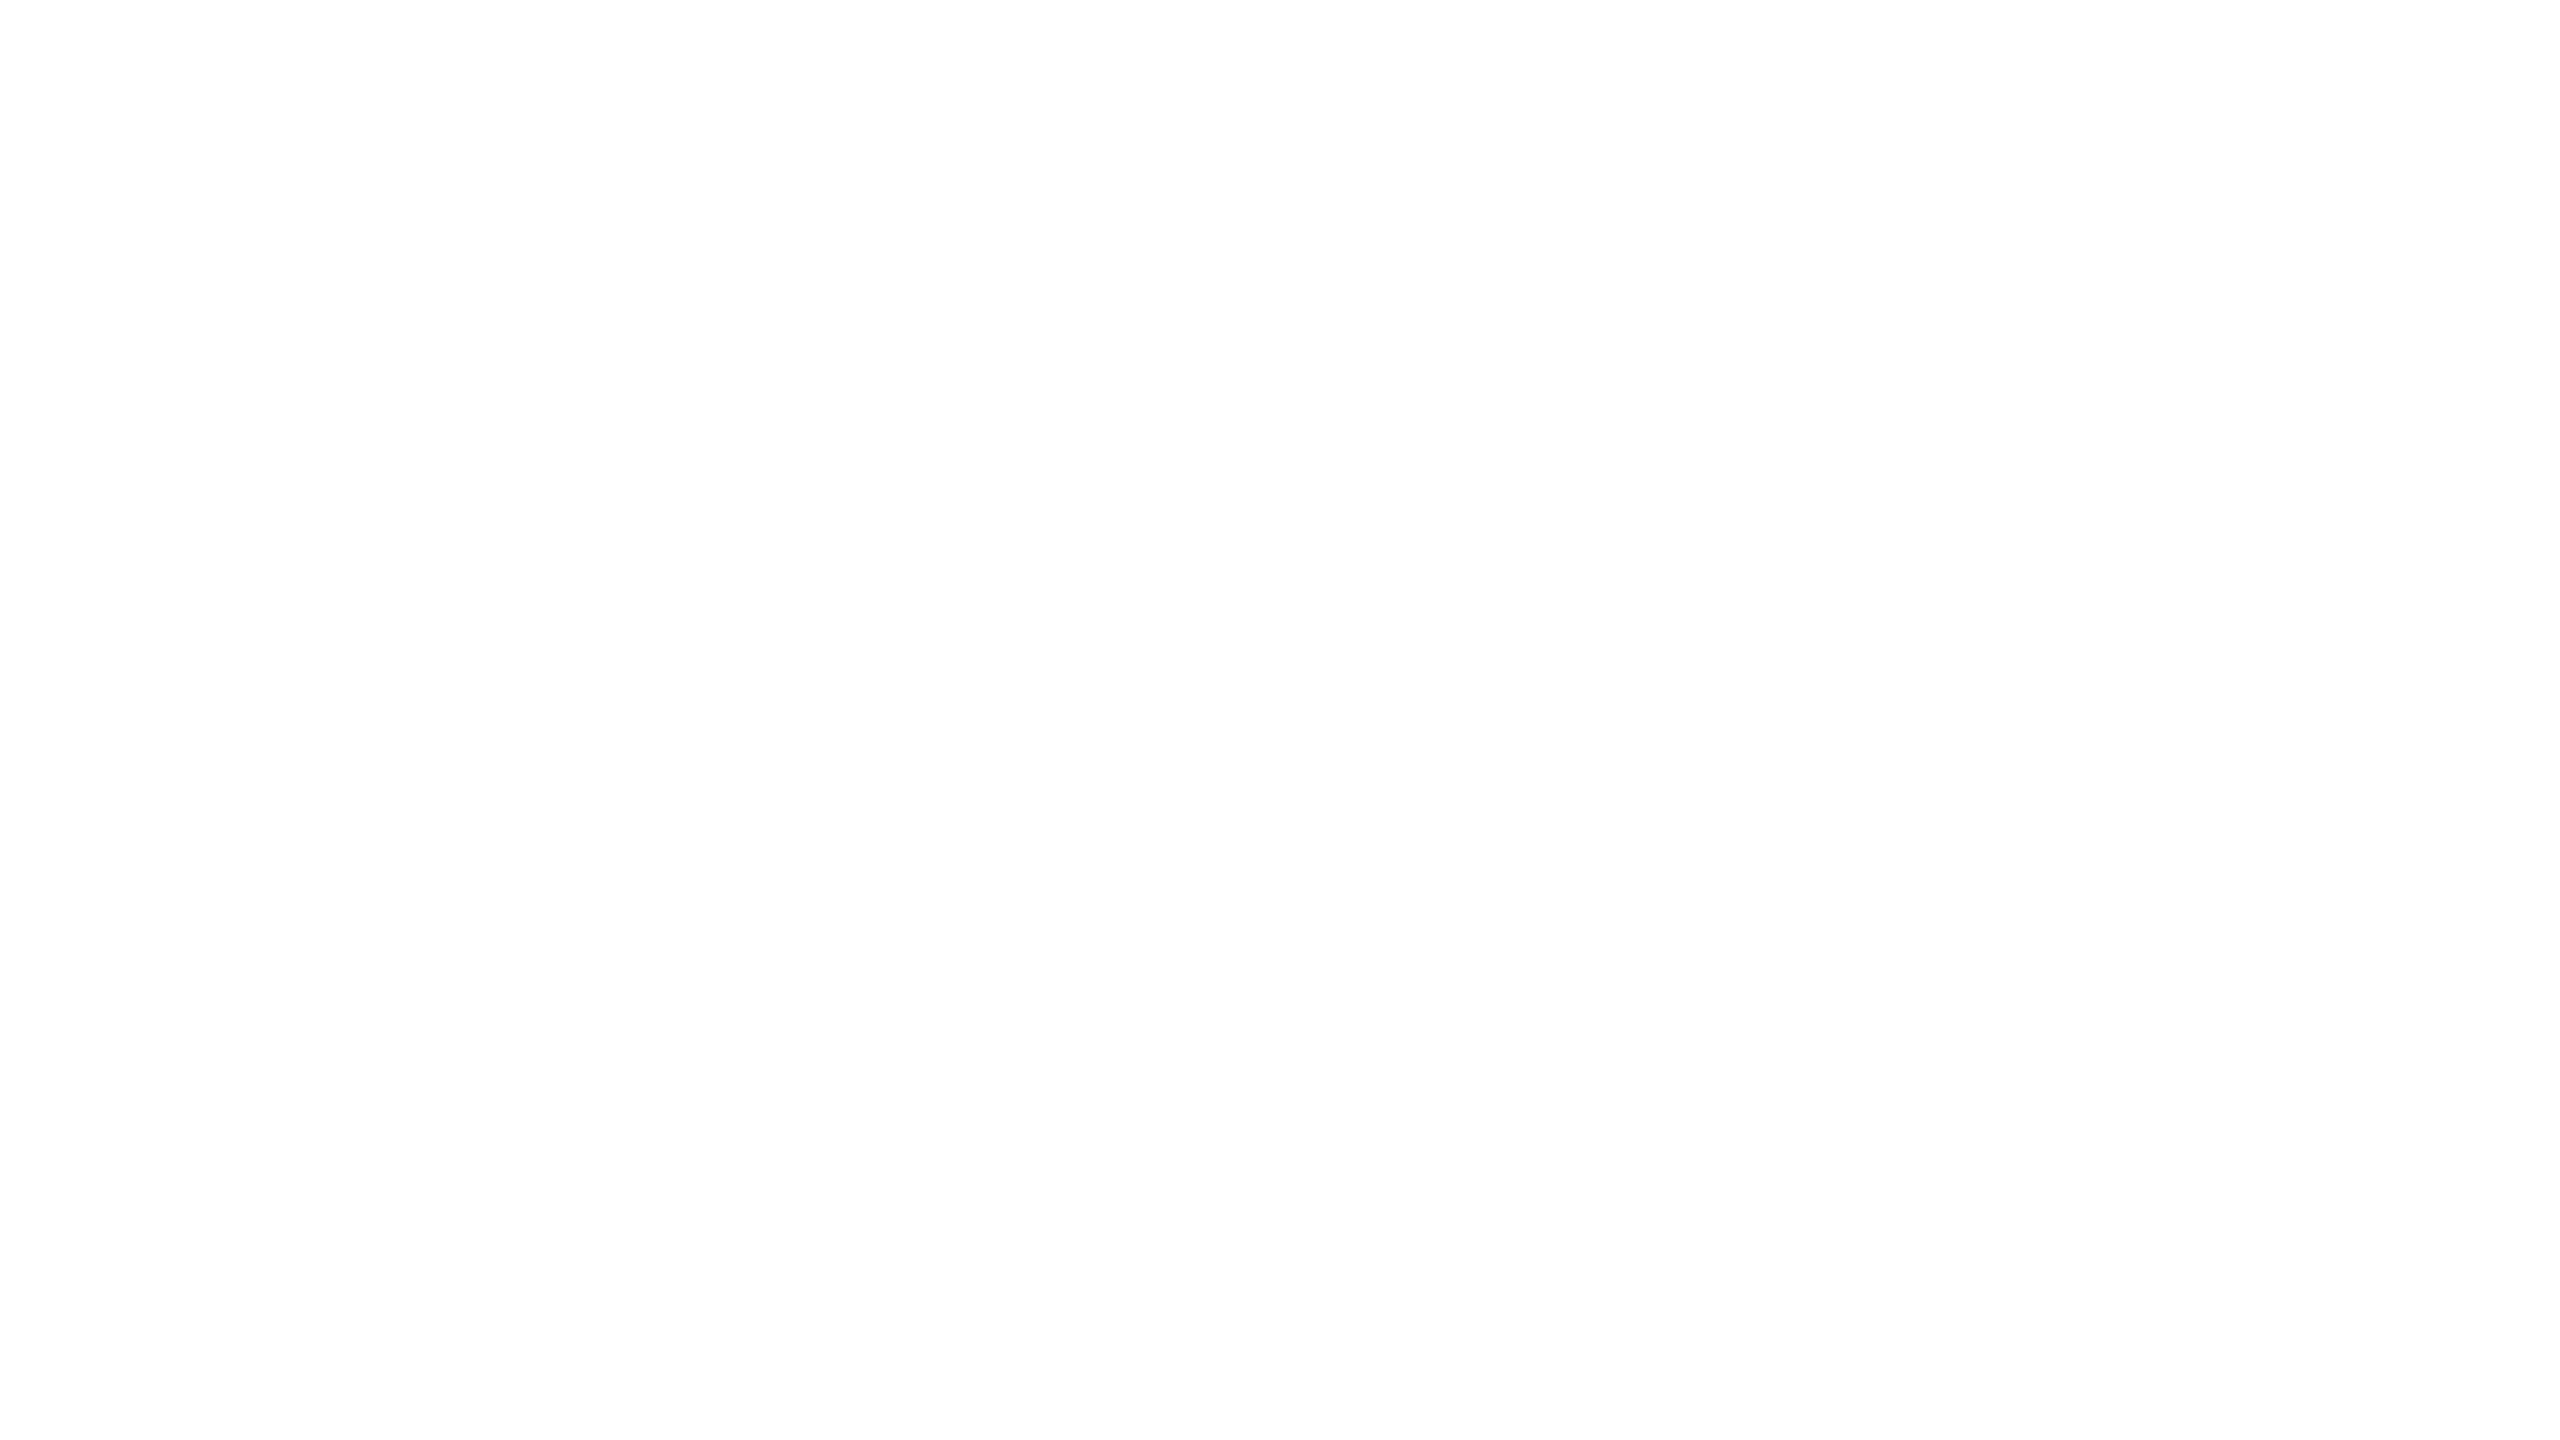 Logo coinmarketcap